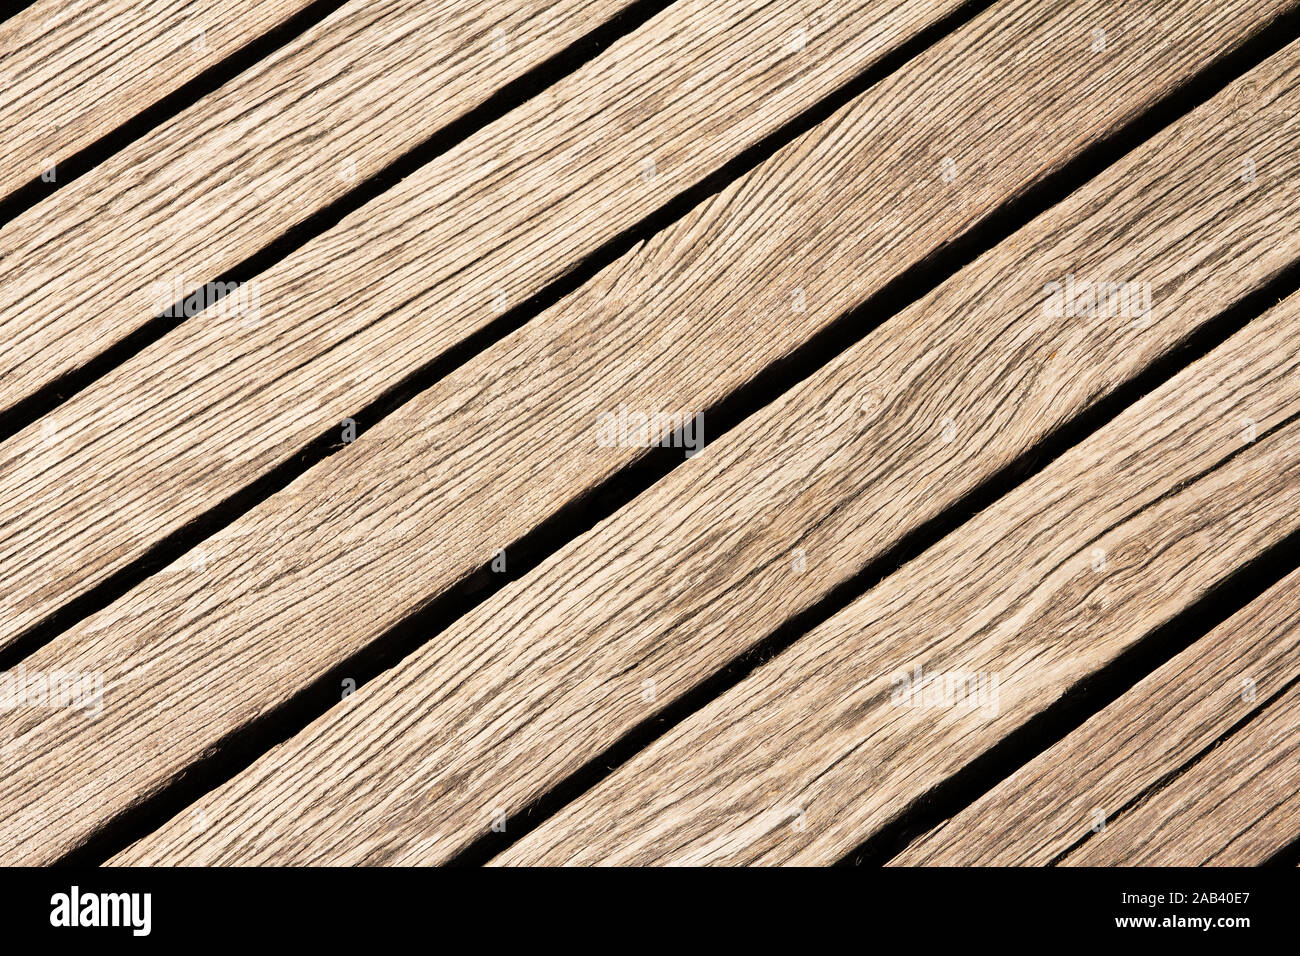 Holzbohlen von einer Fußgängerbrücke |Wooden planks of a footbridge| Stock Photo